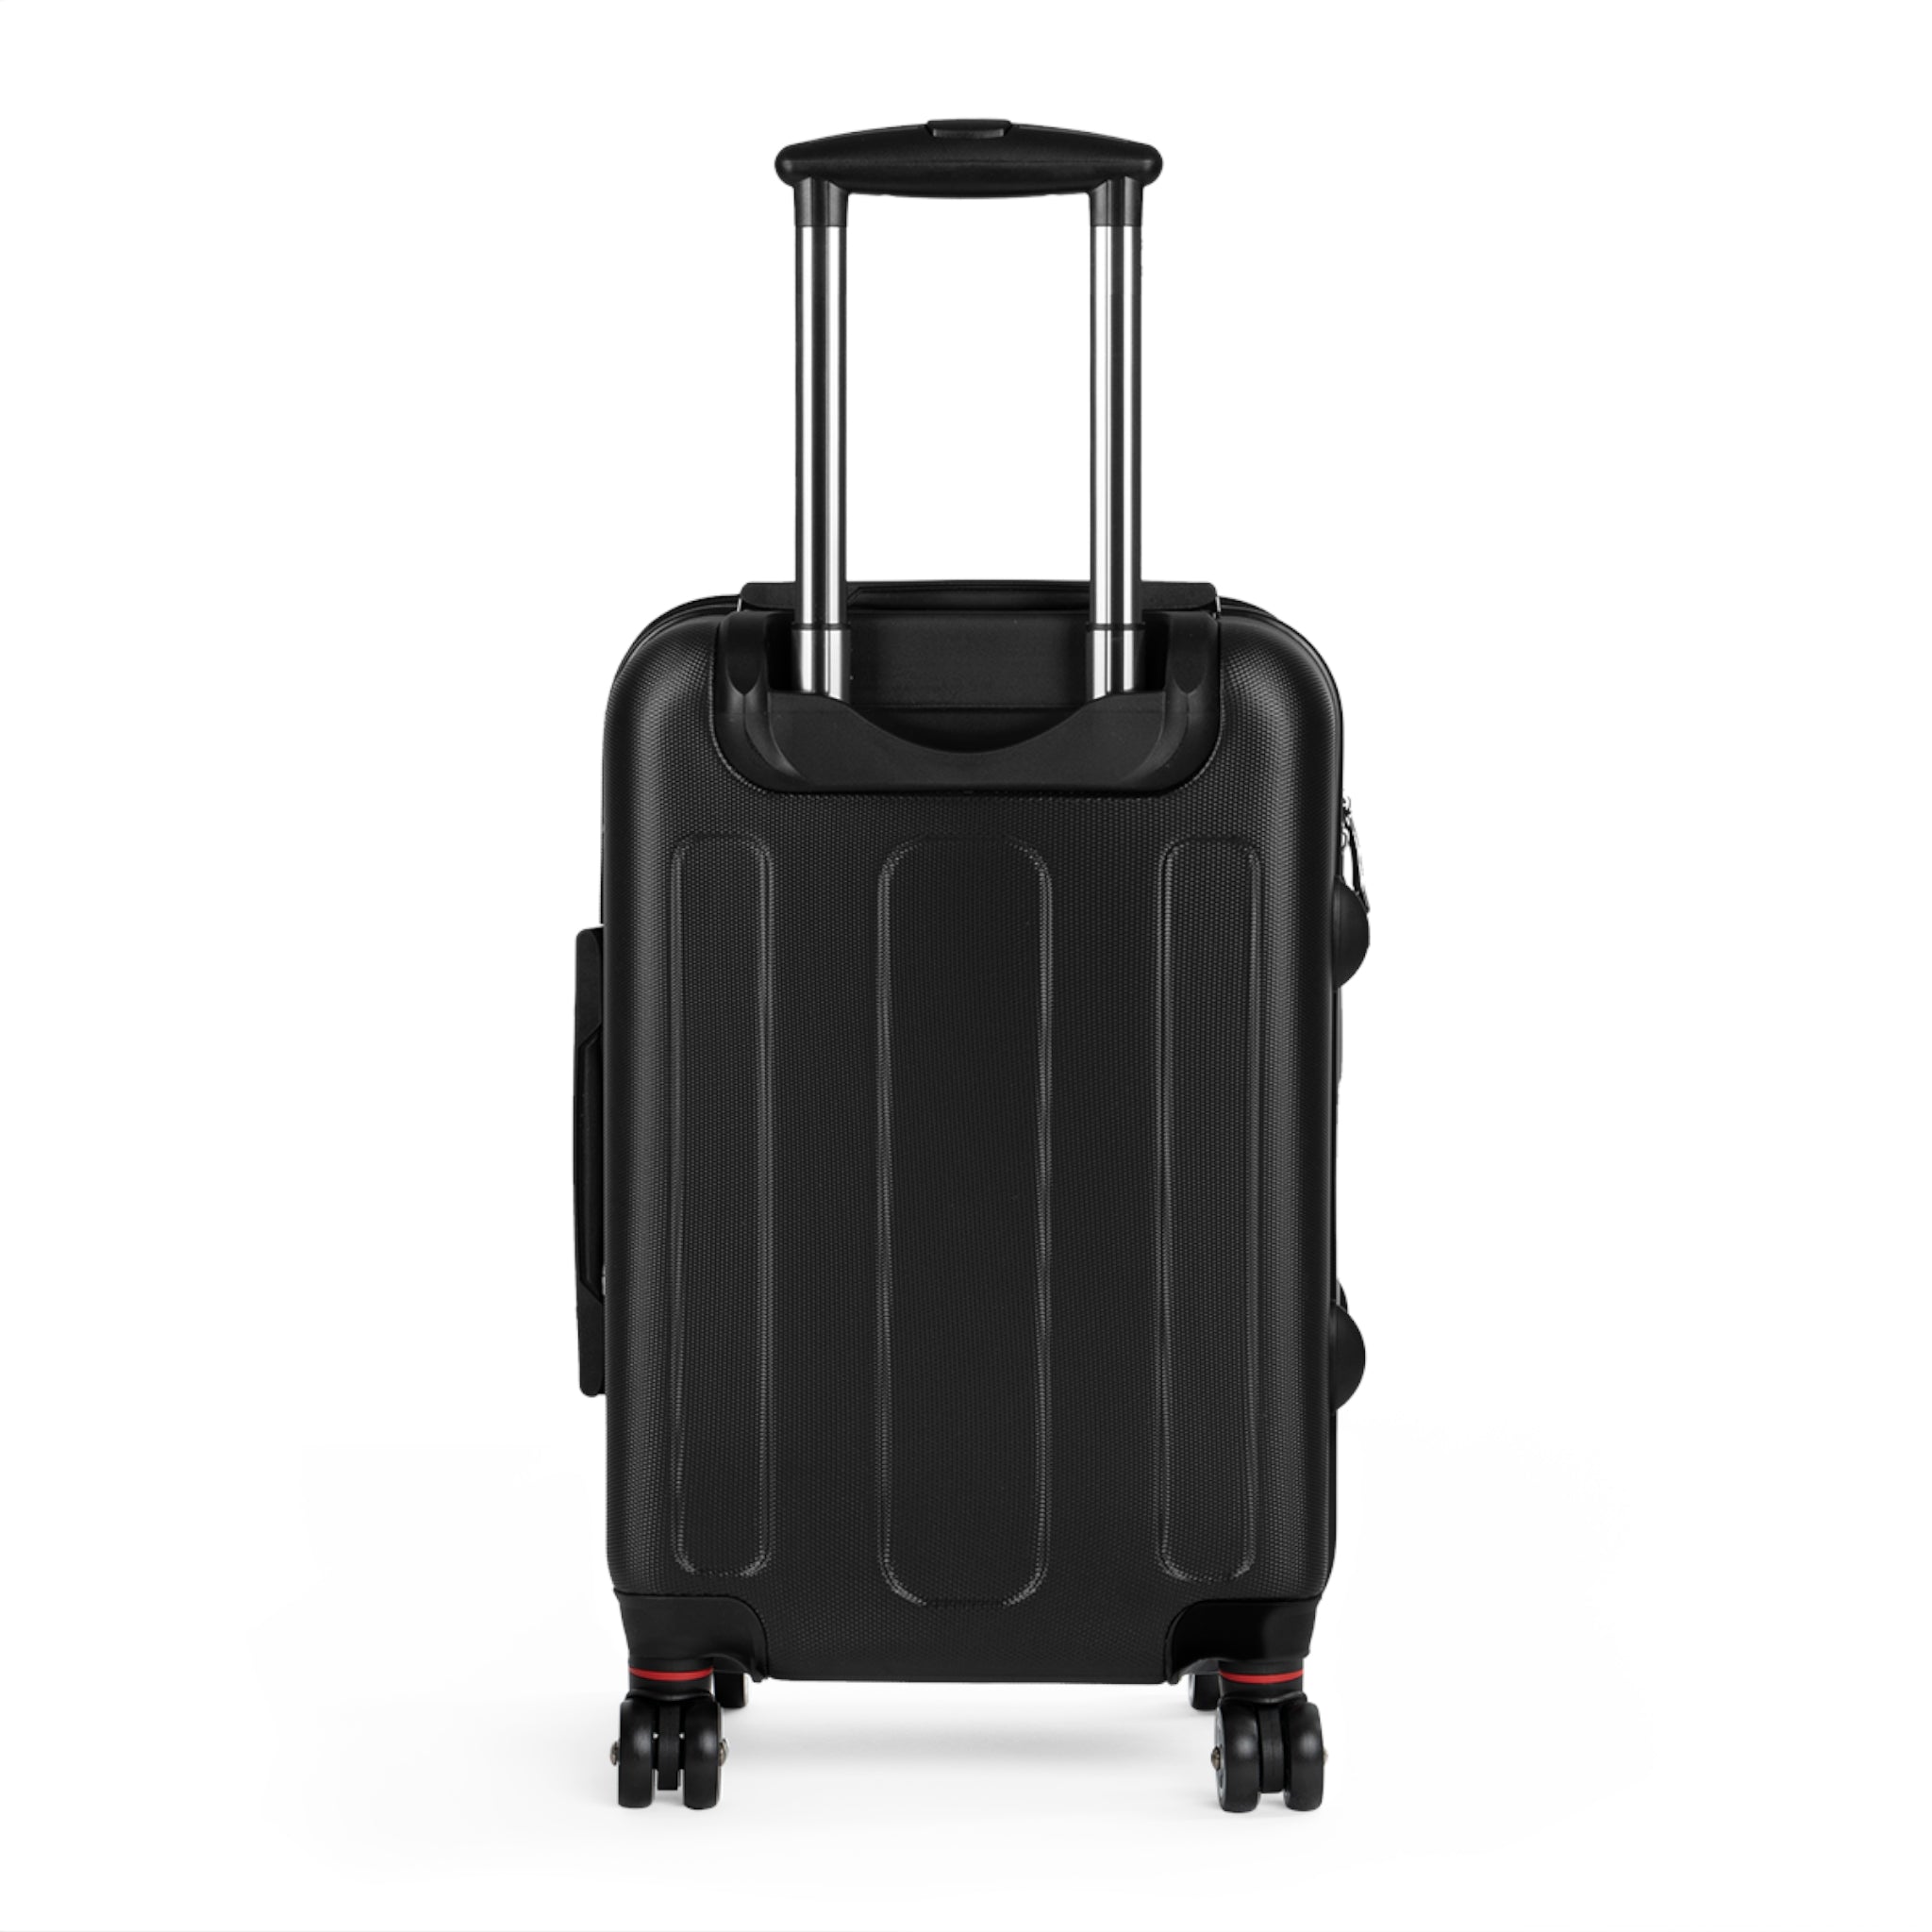 Meta Suitcase